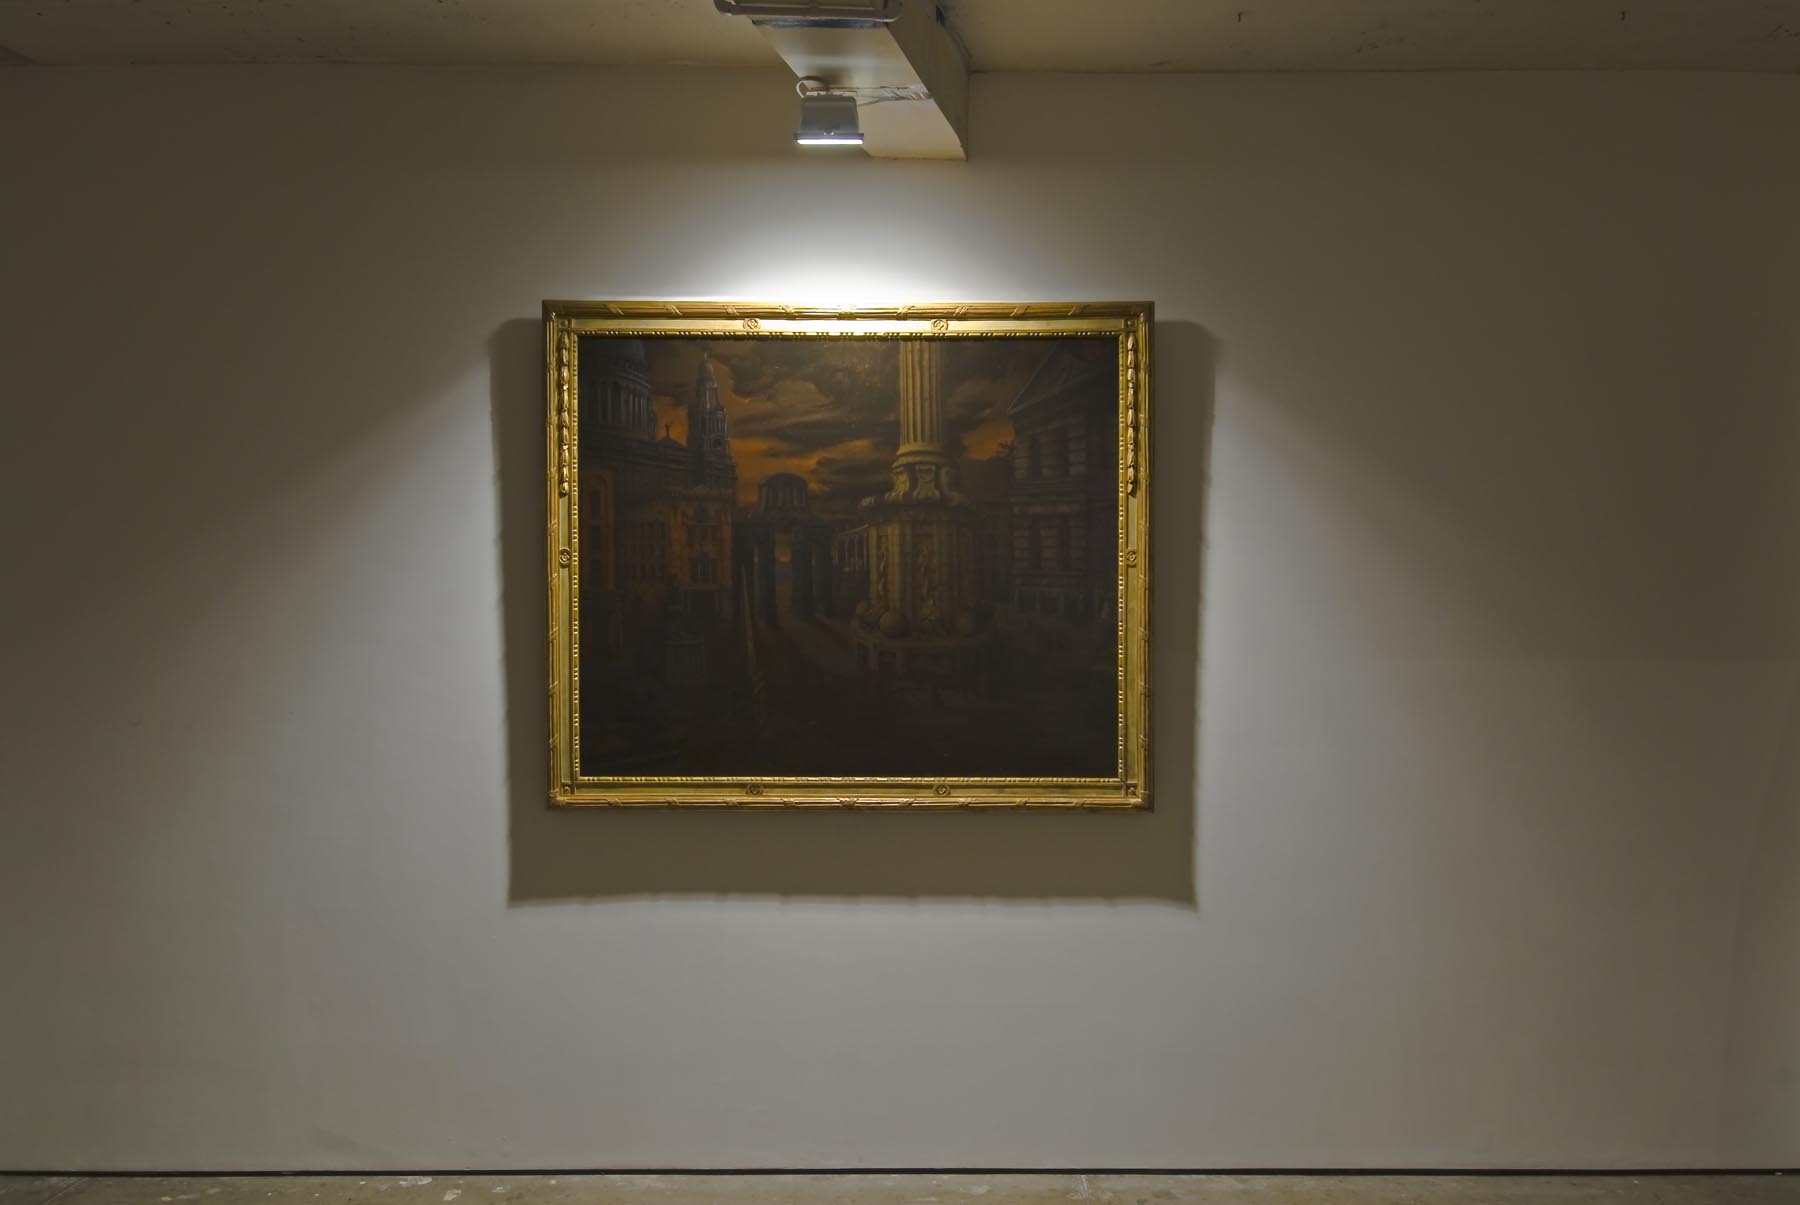     Paternoster Square Cappriccio 2008 oil on linen in artist’s frame 154 x 185 cm    